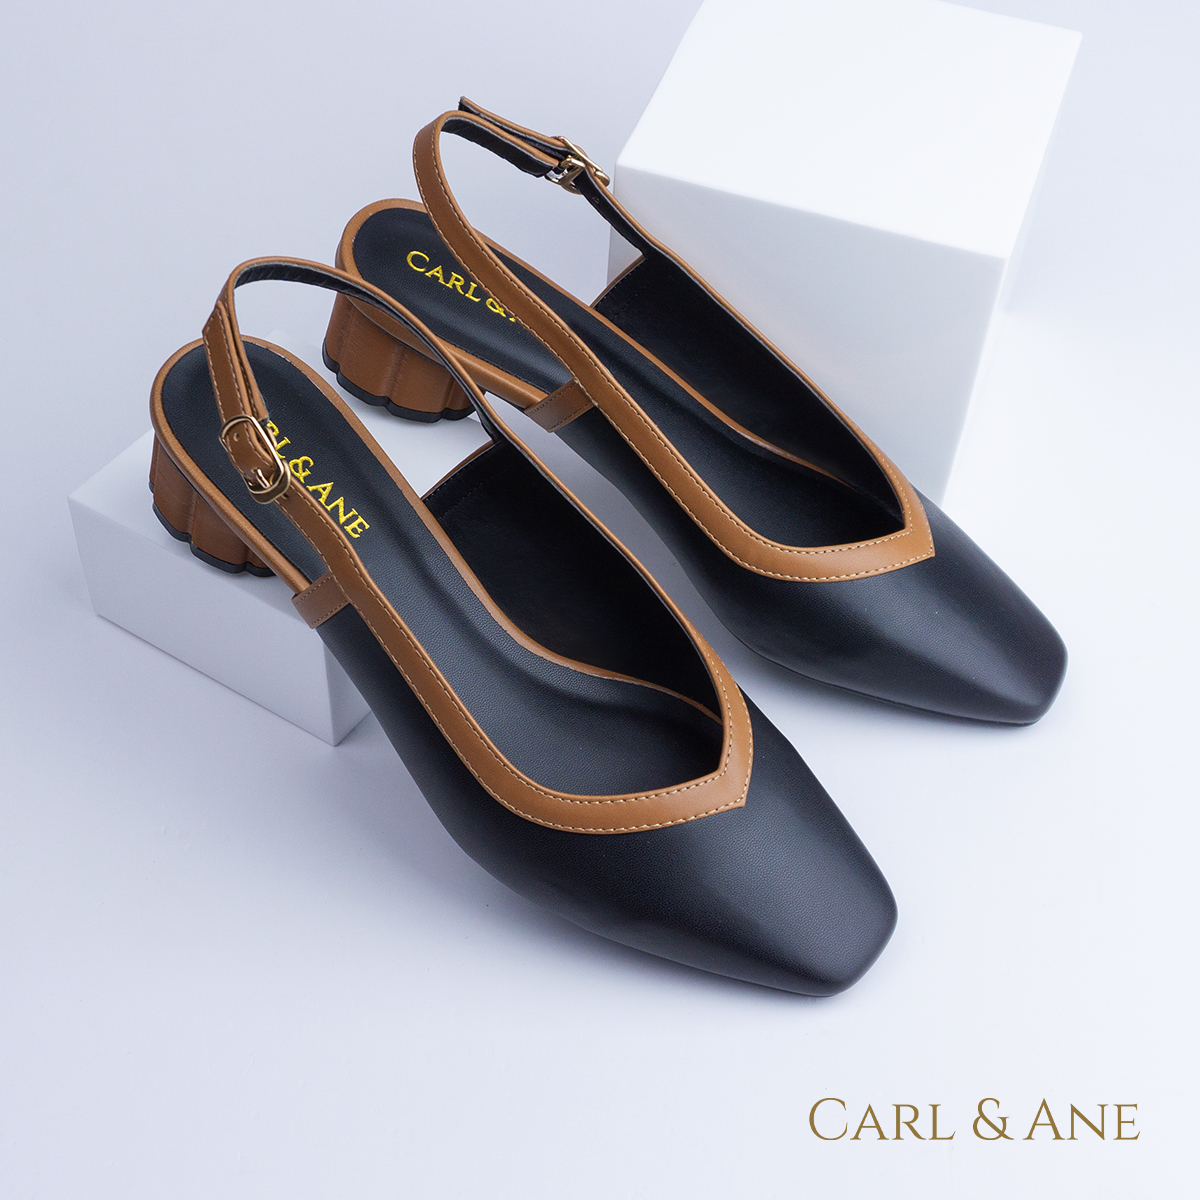 Carl & Ane - Giày cao gót thời trang mũi vuông hở gót phối dây tinh tế cao 3cm màu kem đậm - CL005